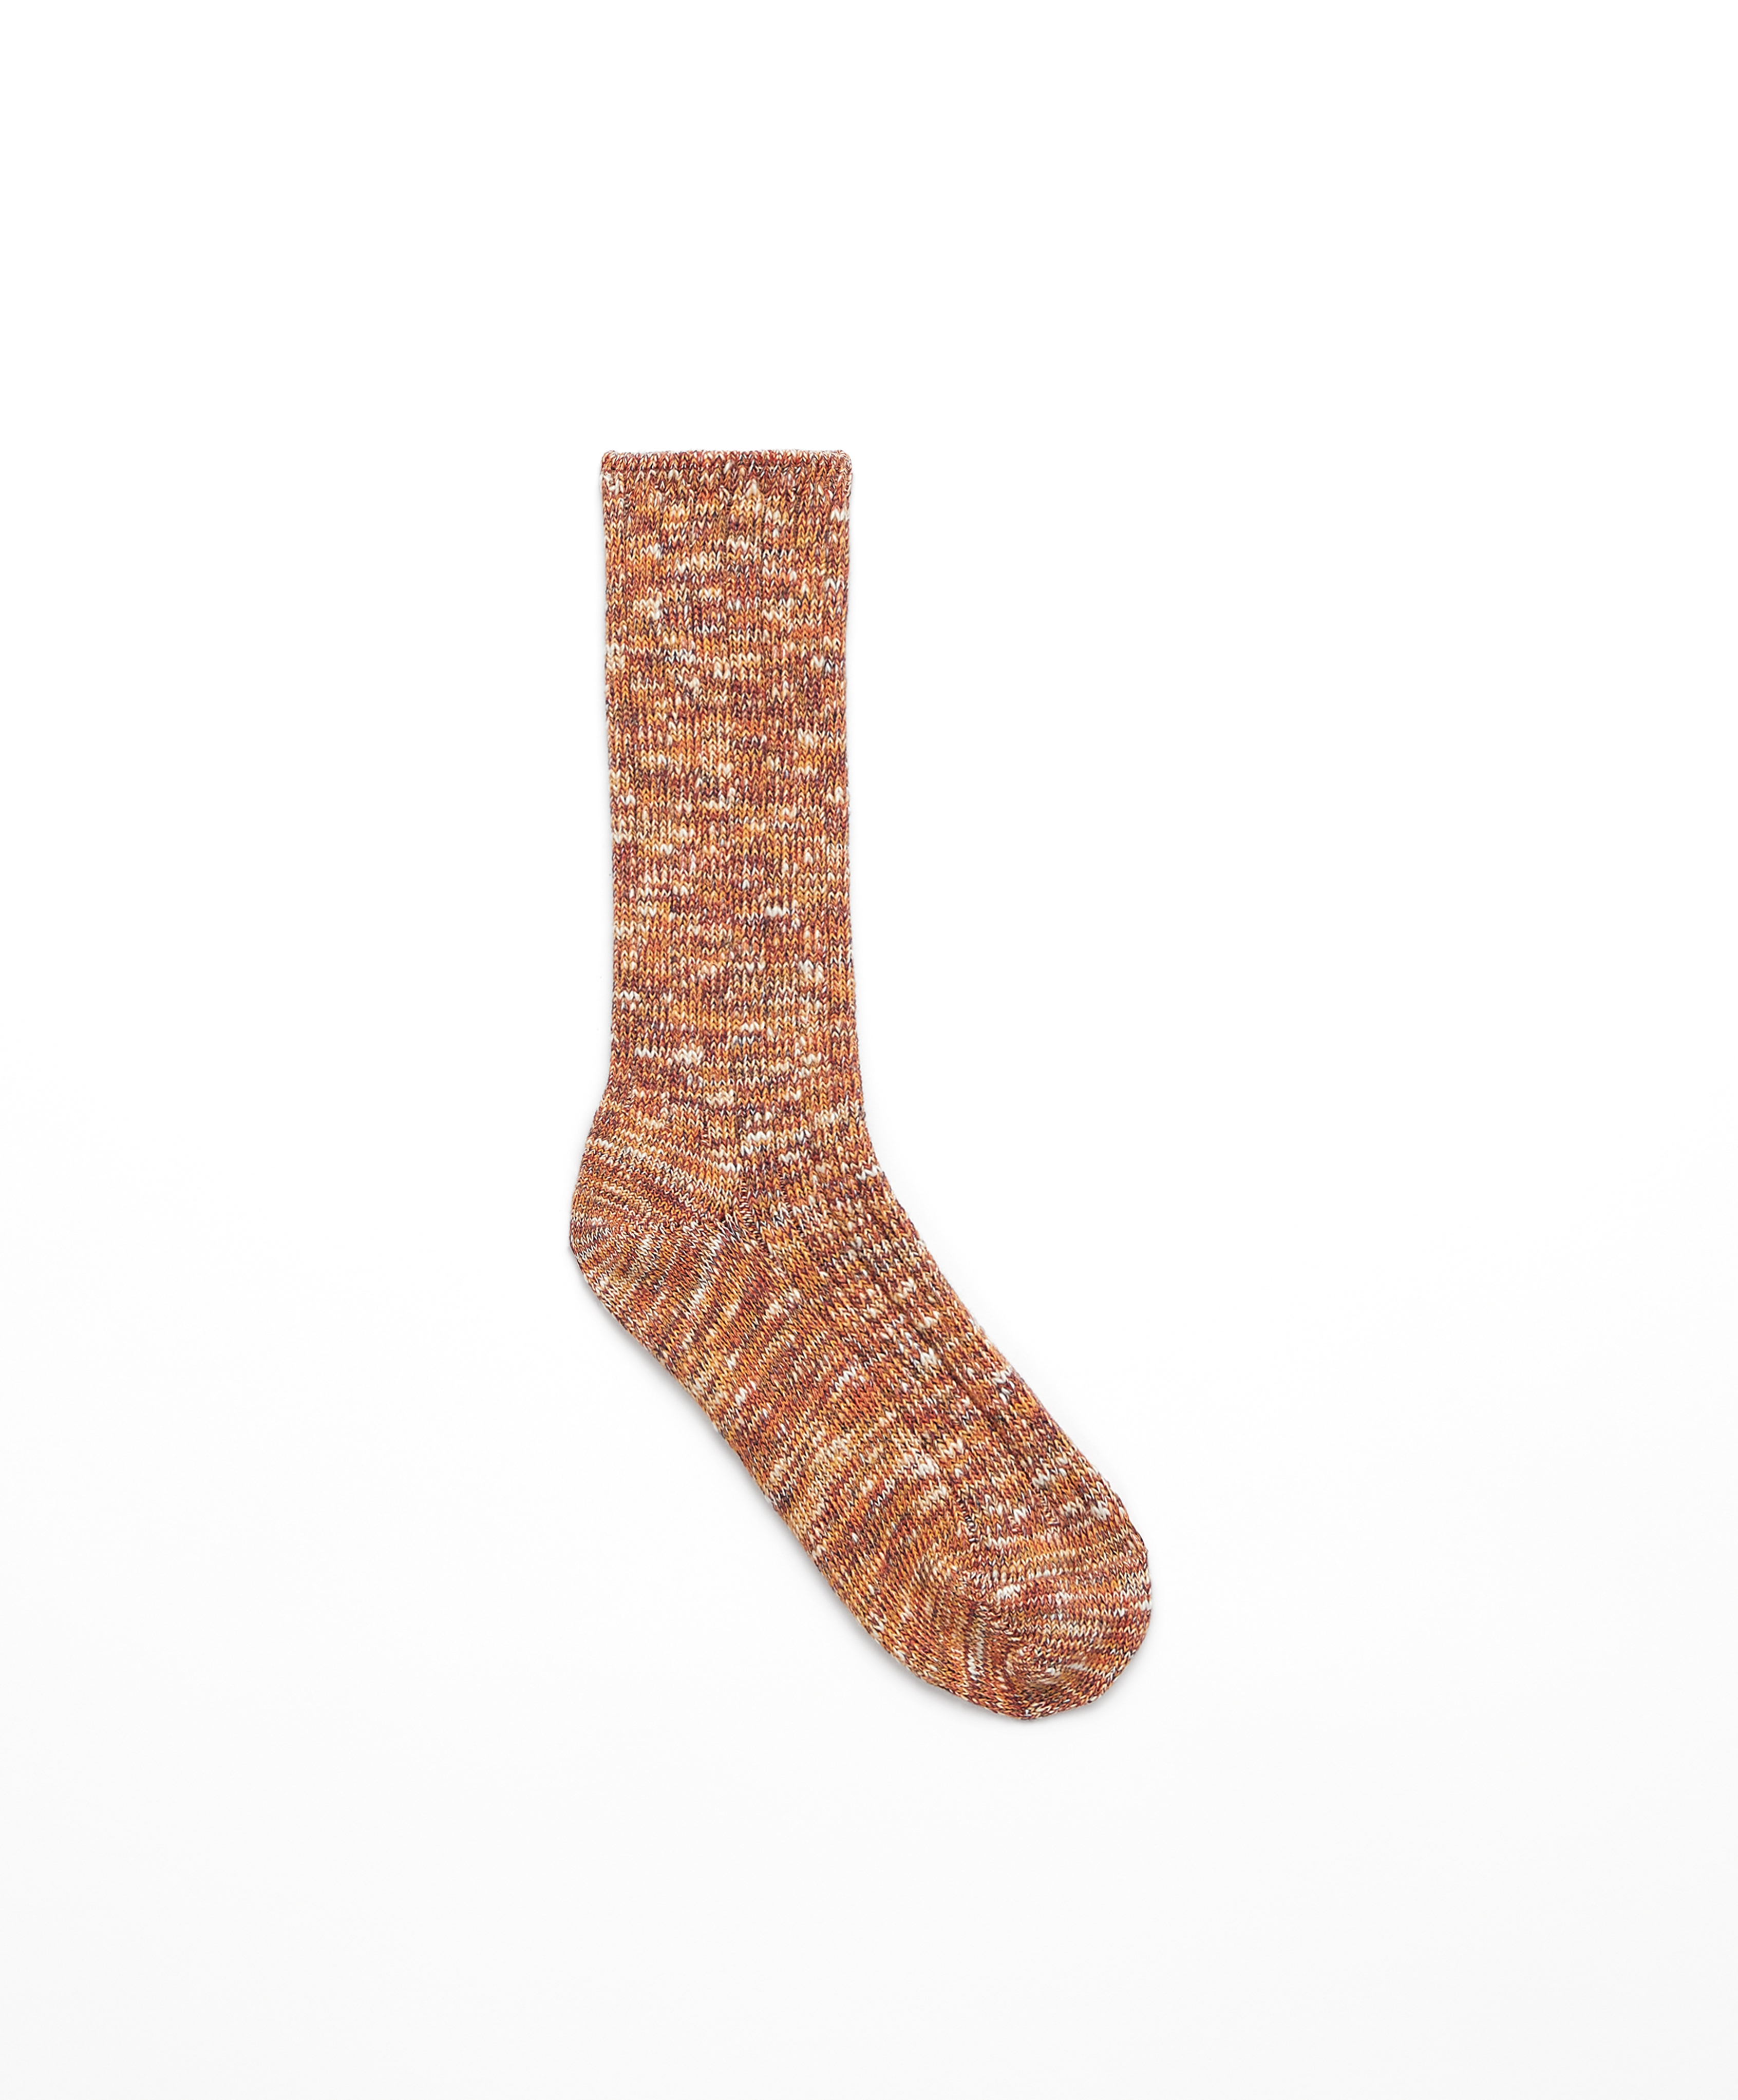 Classic sokken van katoen met brede rib